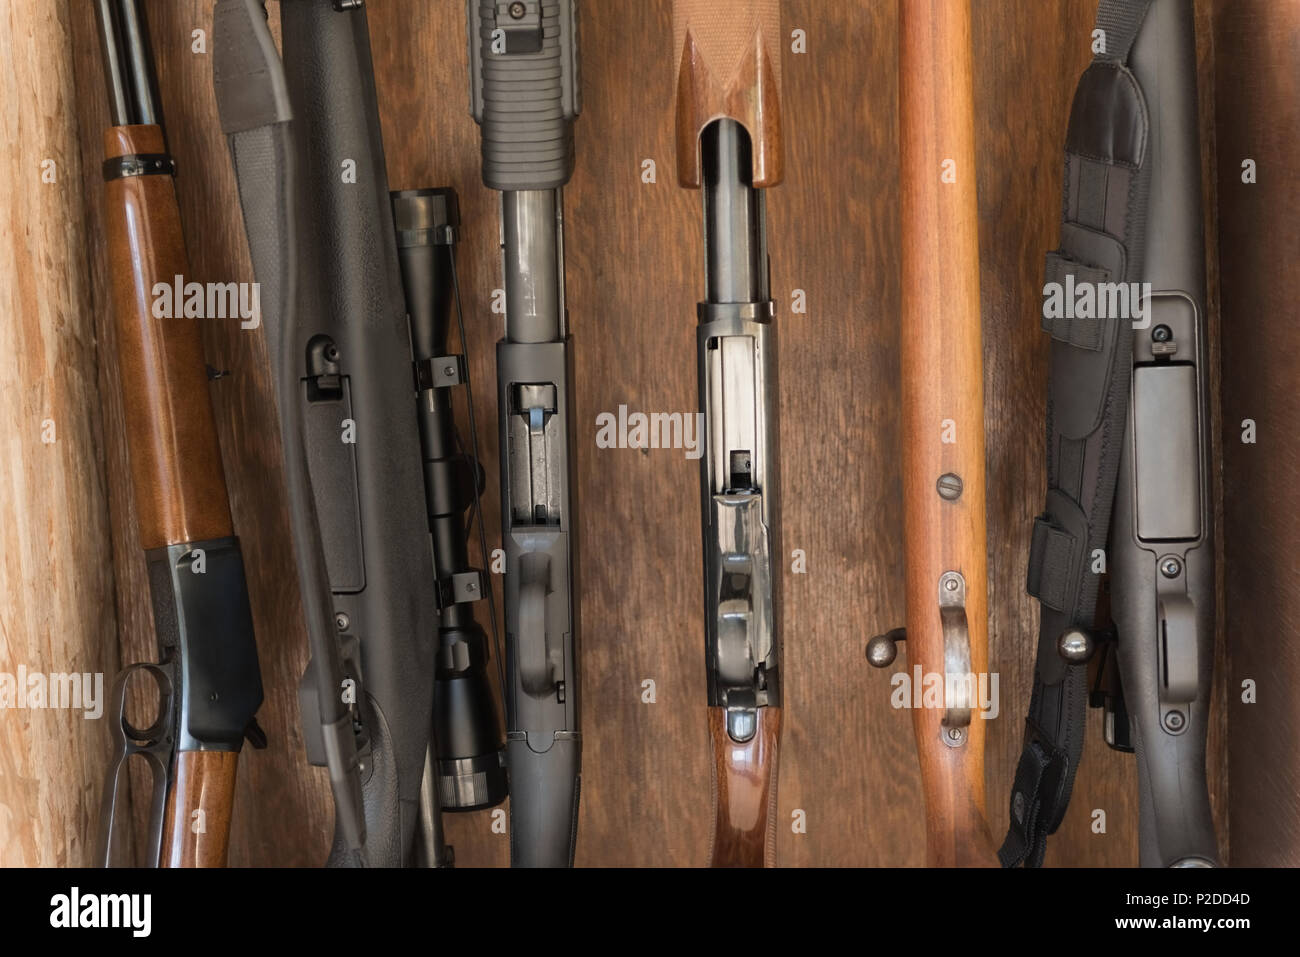 Varie pistole disposti in rack in legno Foto Stock